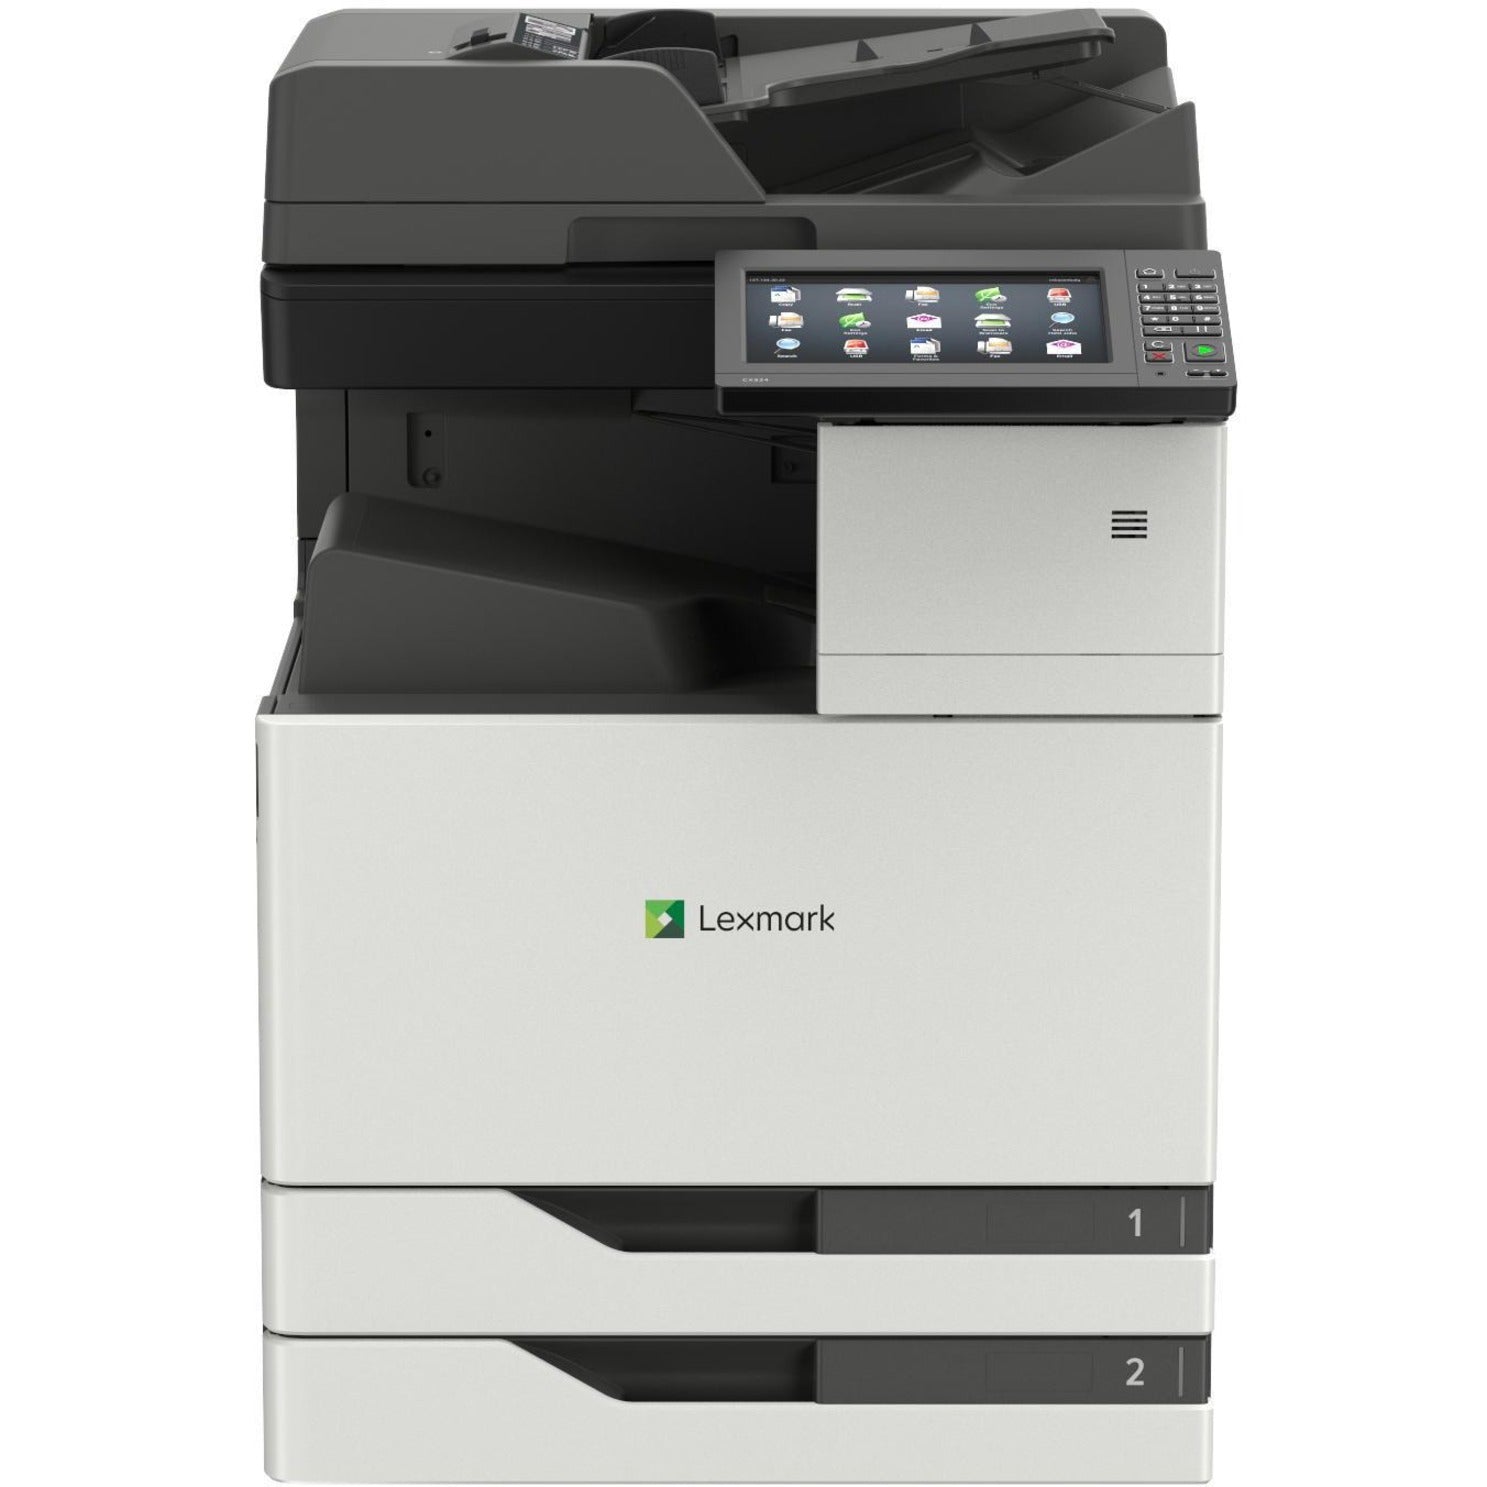 Lexmark 32C0200 CX921de Multifunction Color Laser Printer, 35 ppm, 1200 x 1200 dpi